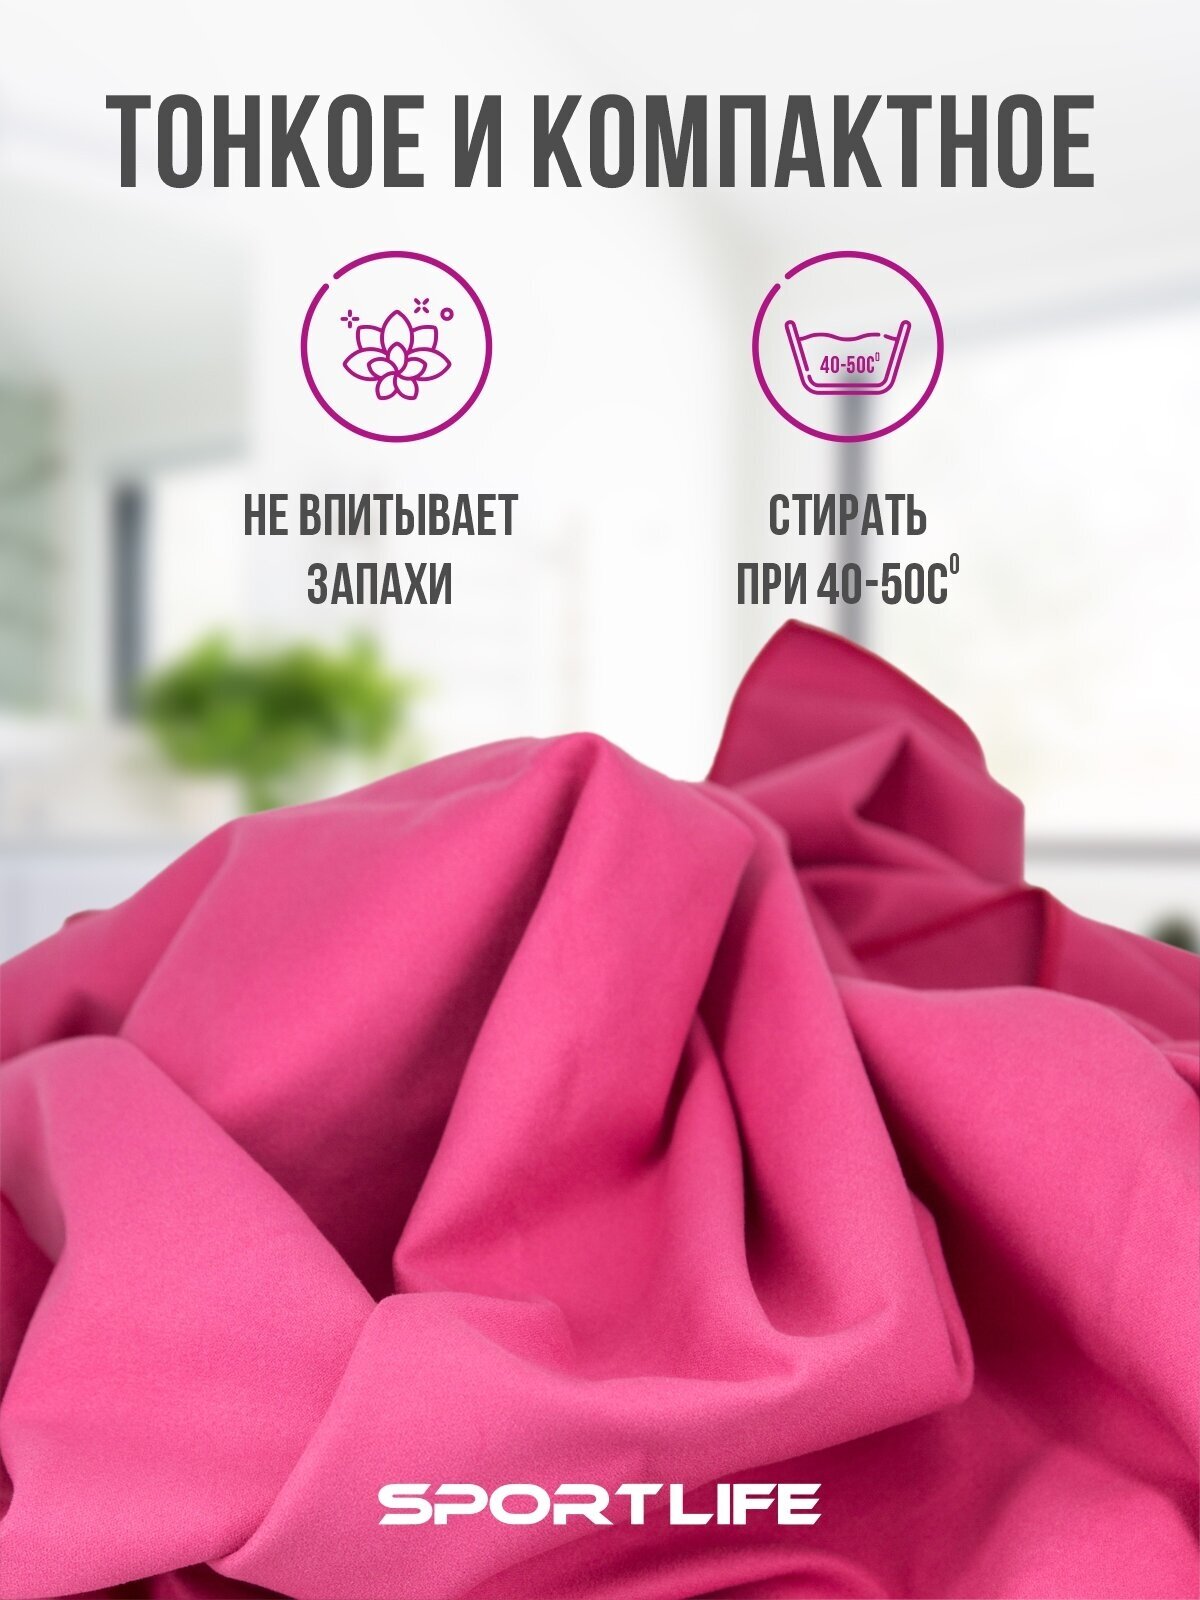 Полотенце спортивное из микрофибры, цвет ярко-розовый / полотенце микрофибра / пляжное полотенце 80х130 см в упаковке